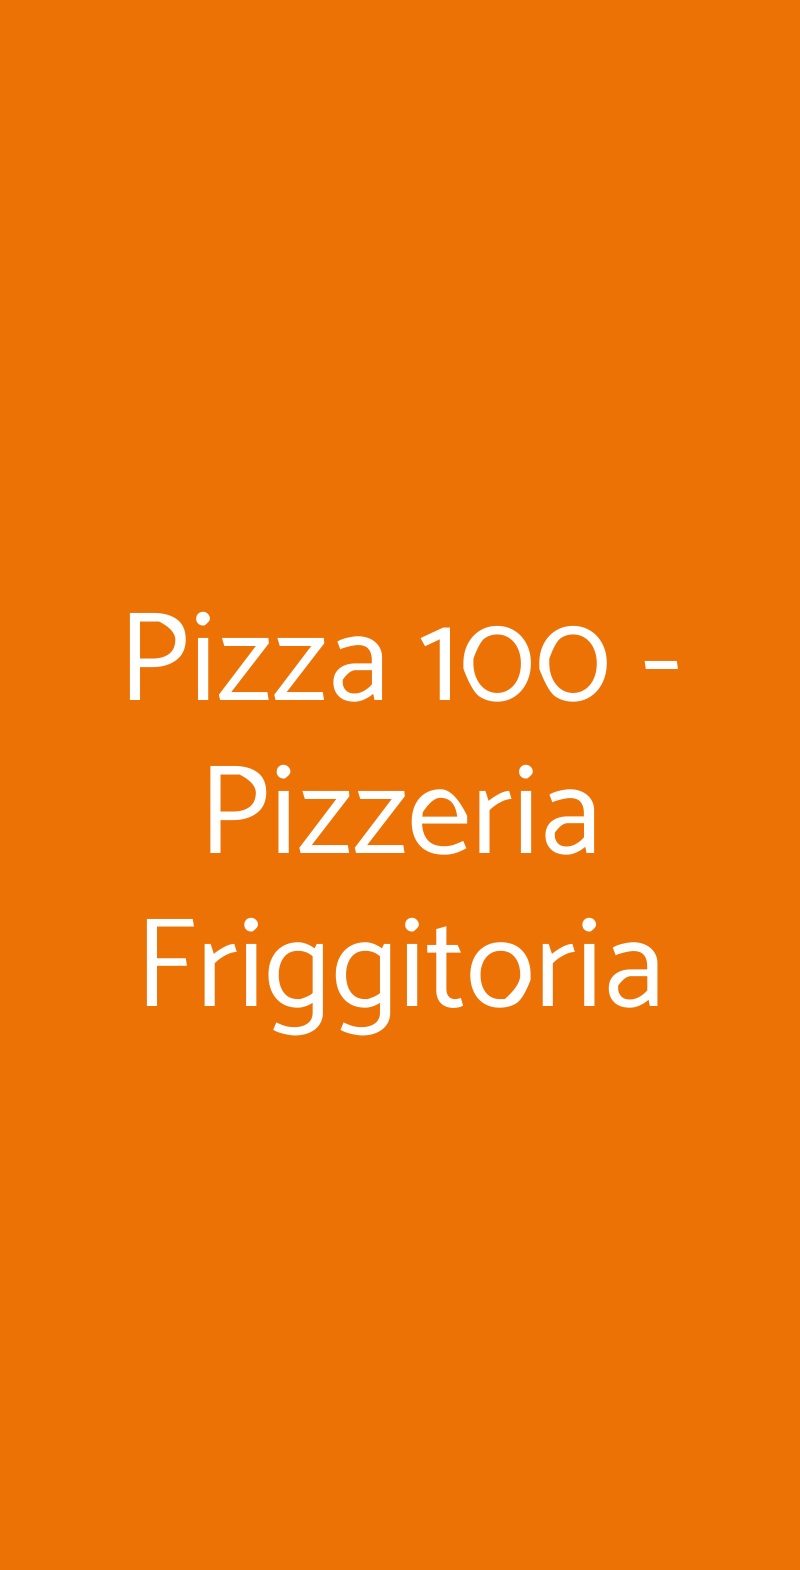 Pizza 100 - Pizzeria Friggitoria Roma menù 1 pagina